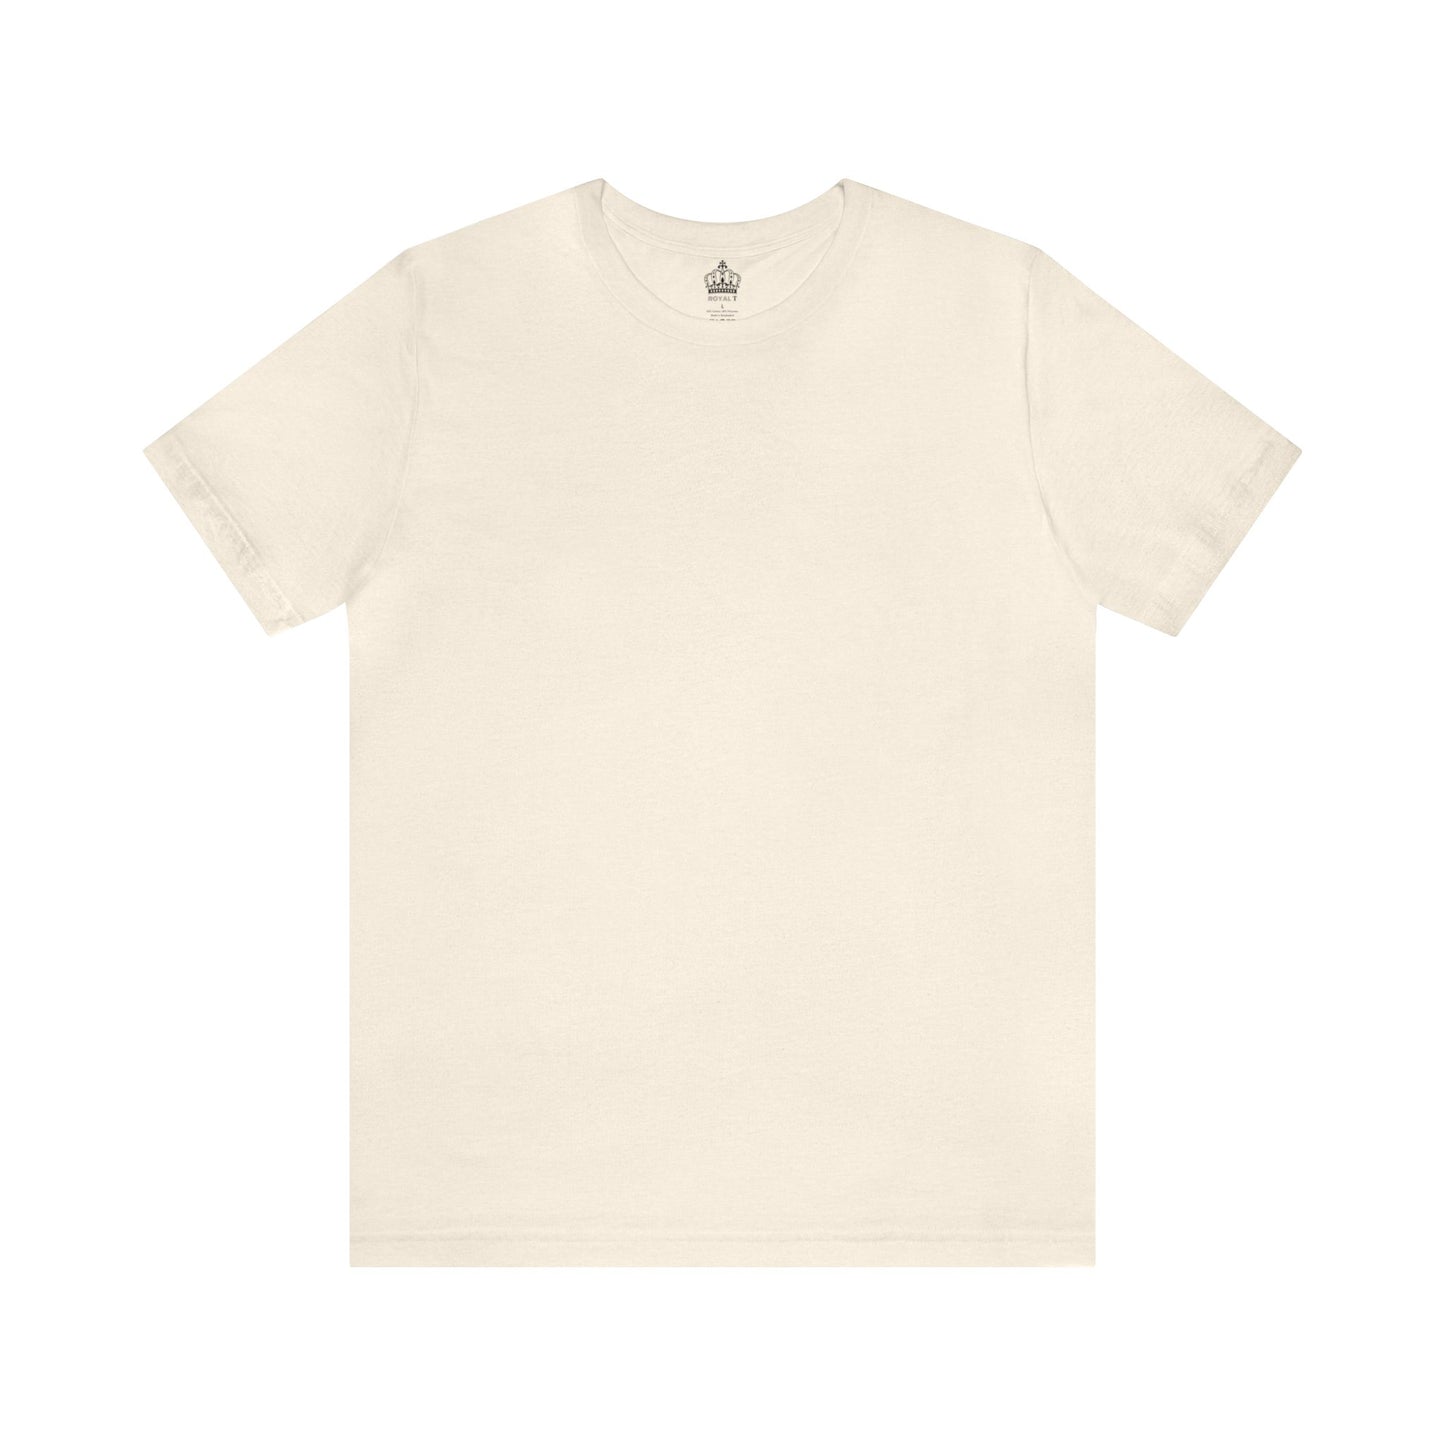 Unisex Jersey Short Sleeve Heather Natural T Shirt